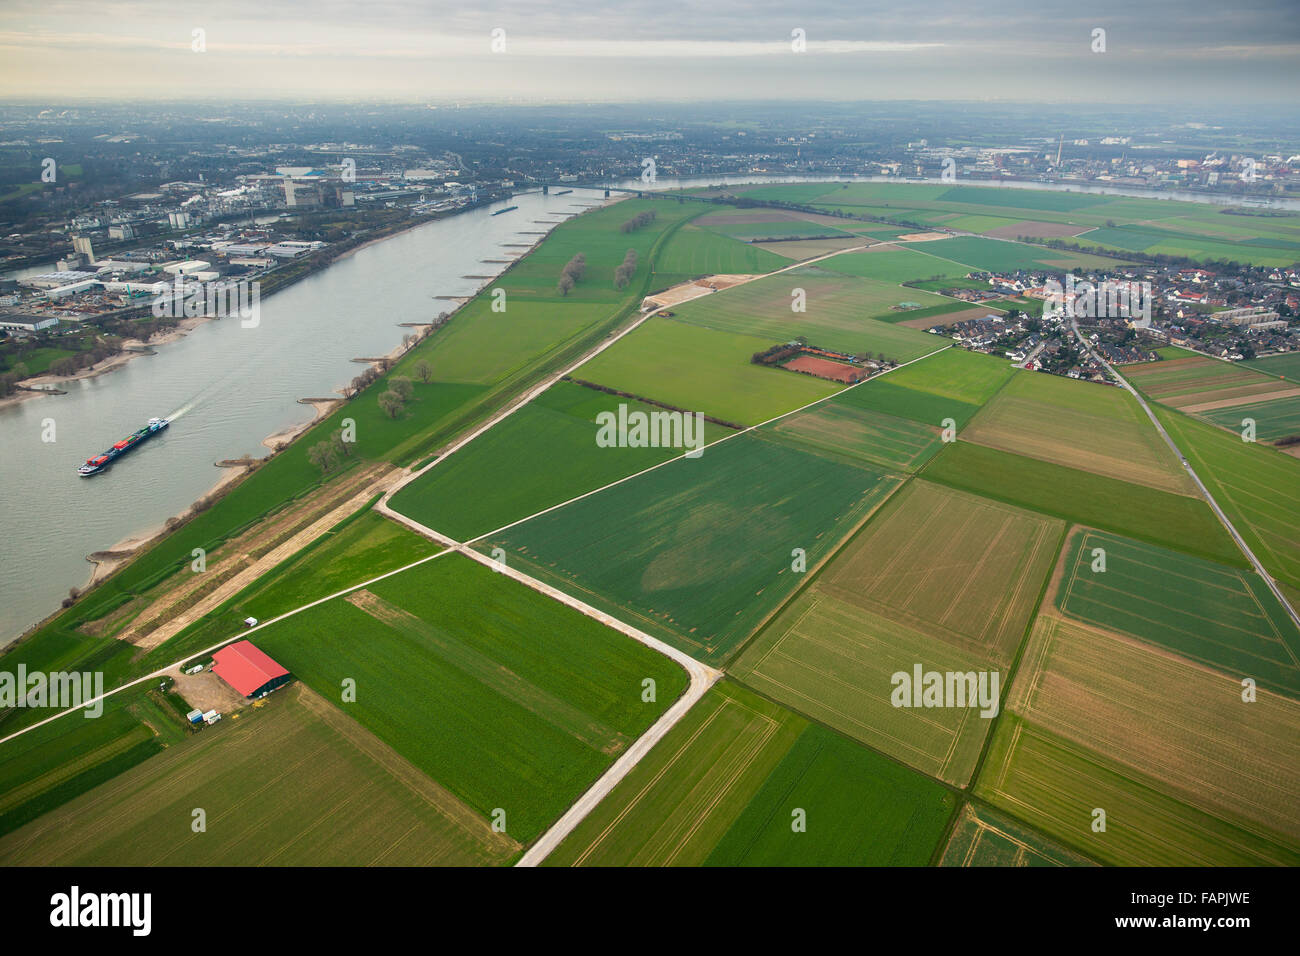 Vue aérienne, bowery, rénovation de la digue, digues, du Rhin, la protection contre les inondations le long du Rhin, ferme à la rivière Rhein Banque D'Images